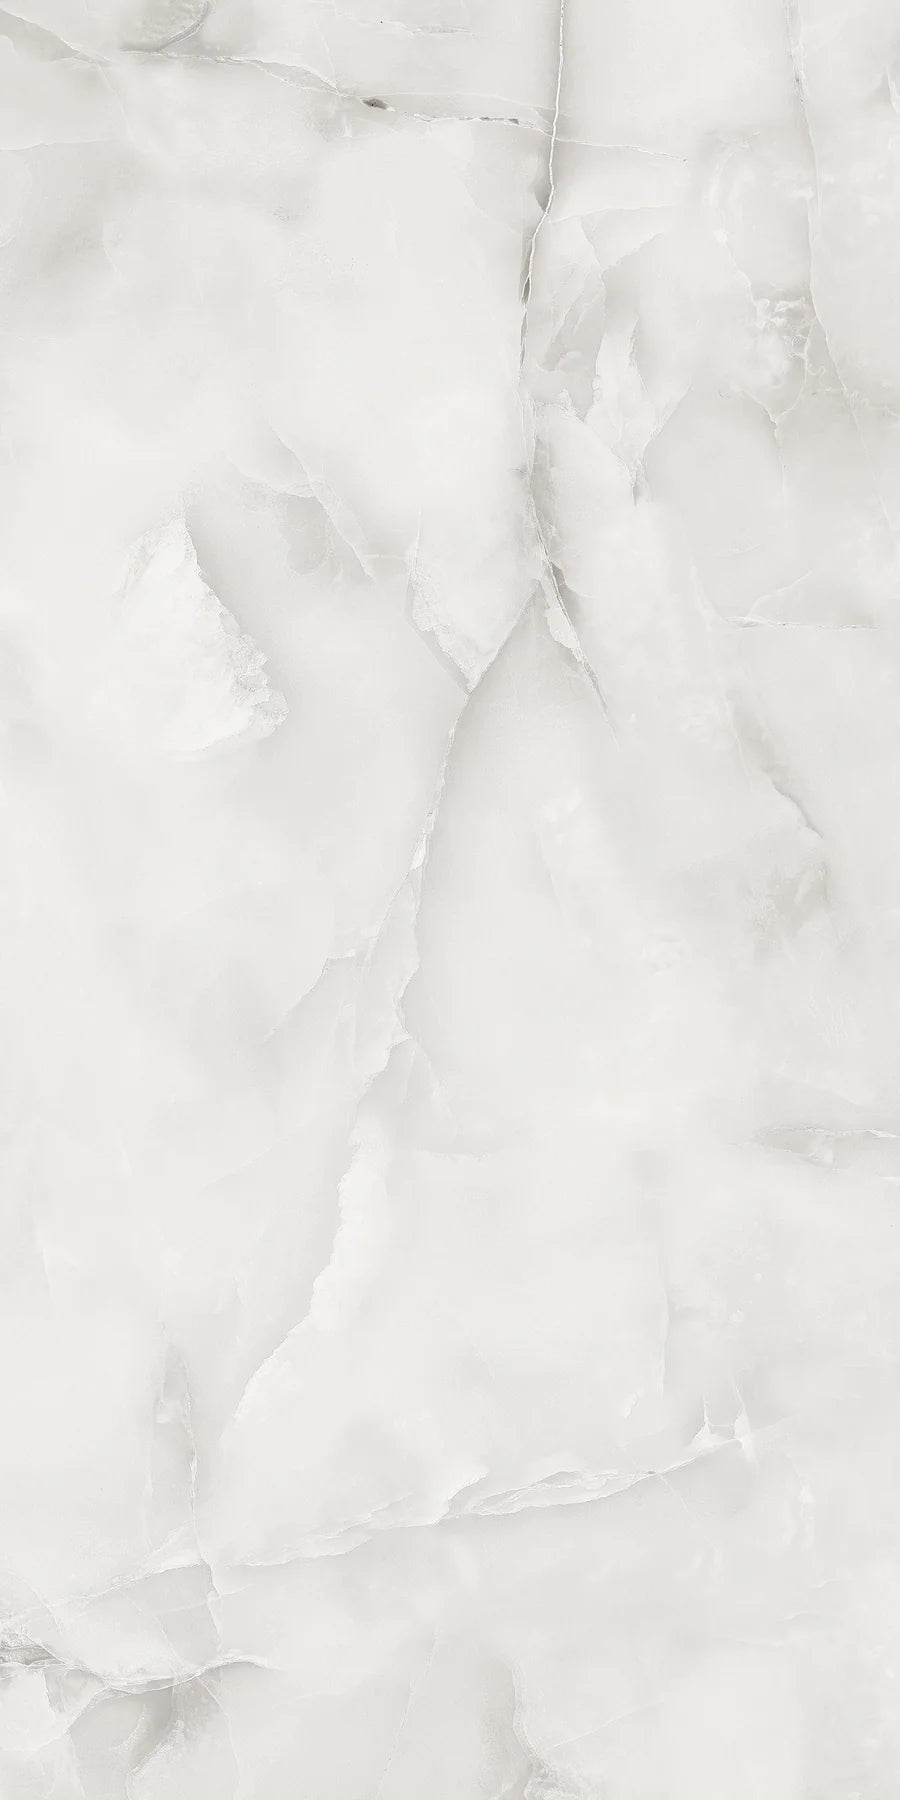 Pallet Deal: 68 Tiles (48 sq.m) - Aquarius Onyx Gloss Porcelain 60x120cm for Kitchen & Bathroom Tile